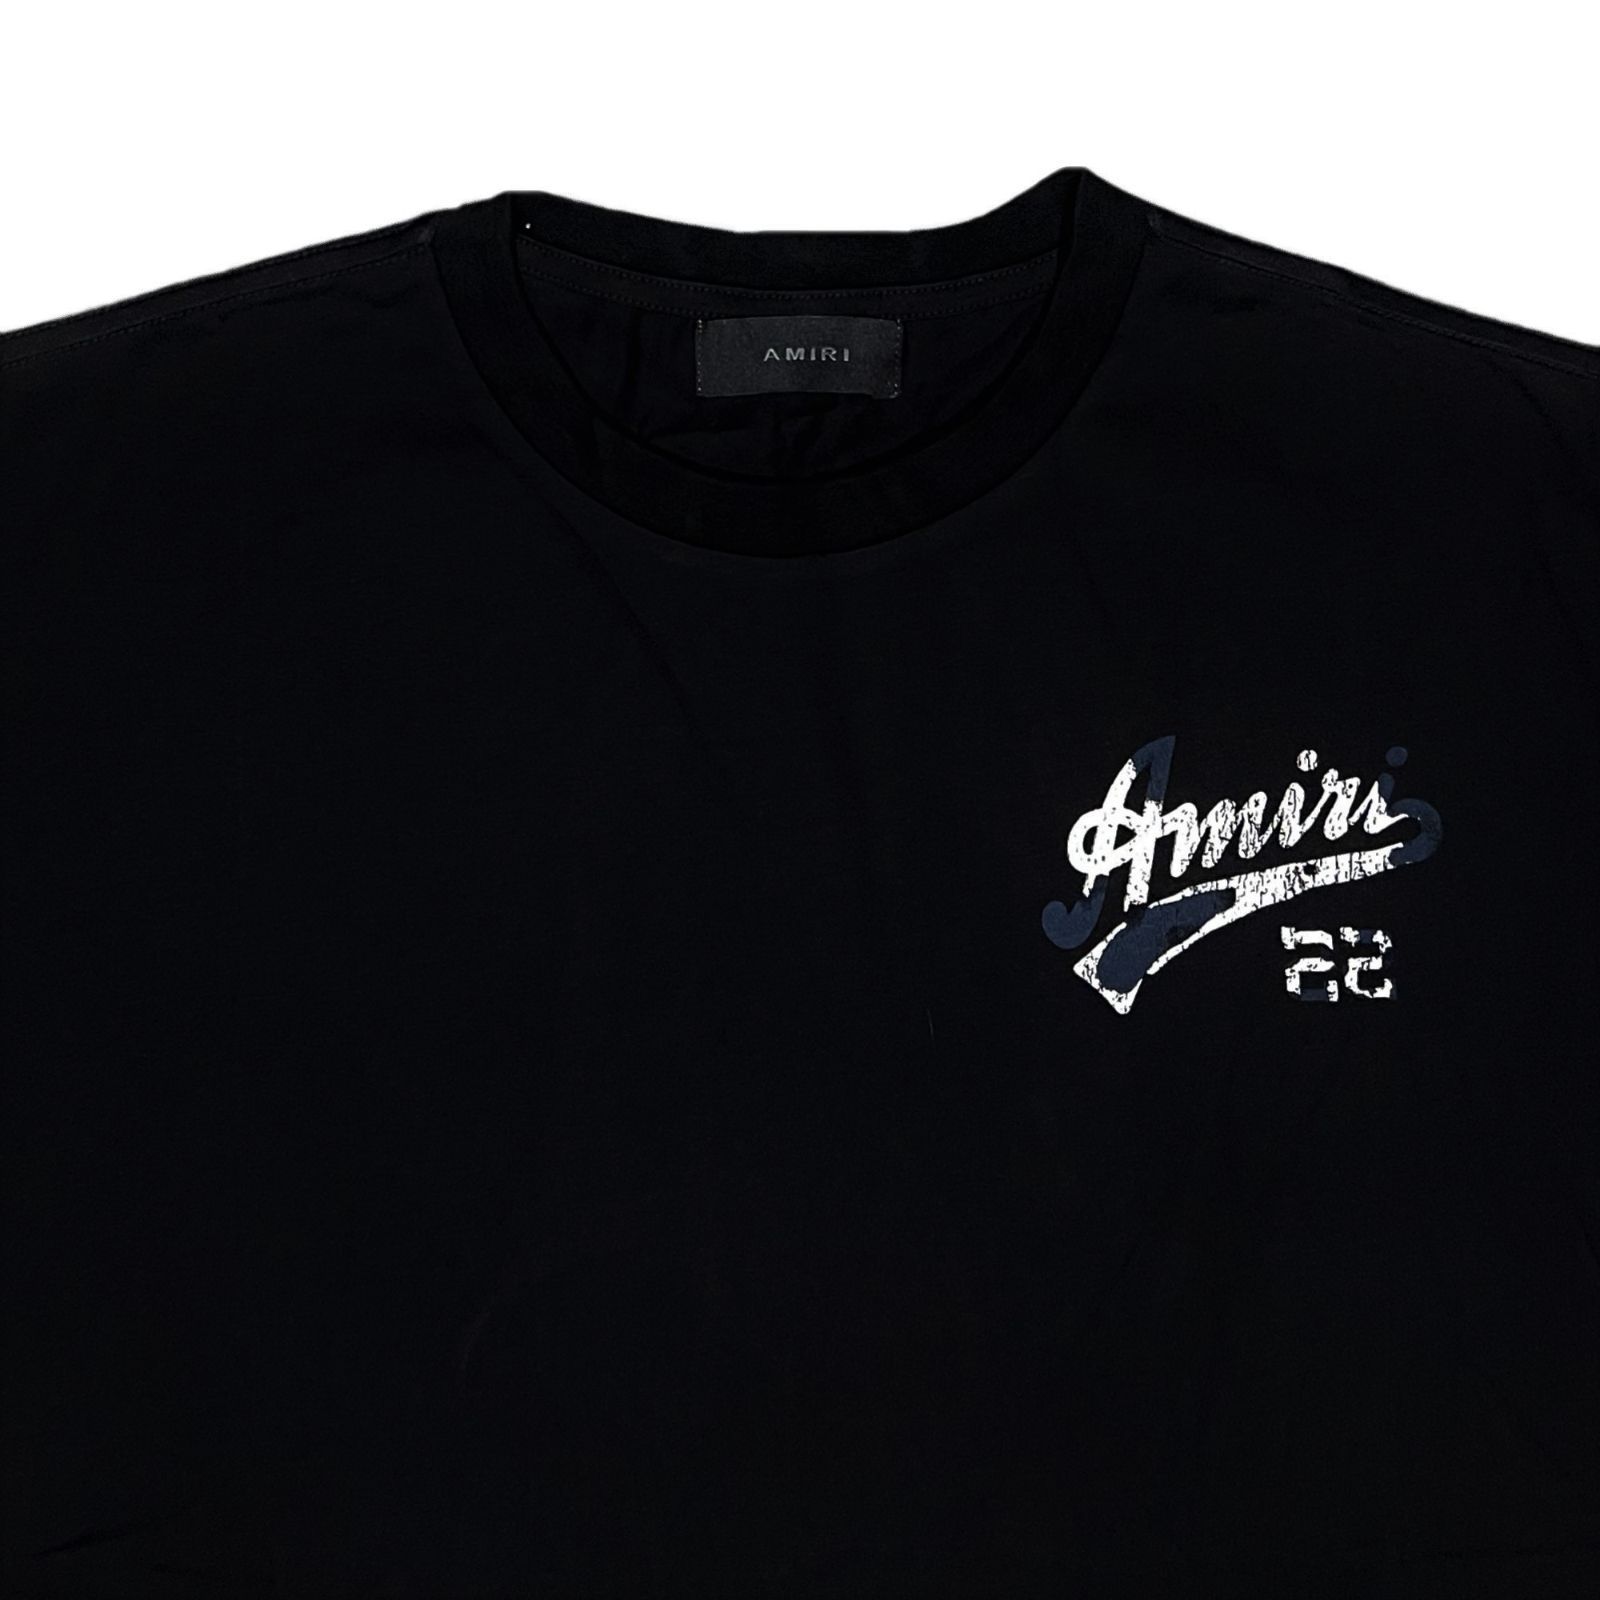 AMIRI アミリ 22 JERSEY Tシャツ ブラック